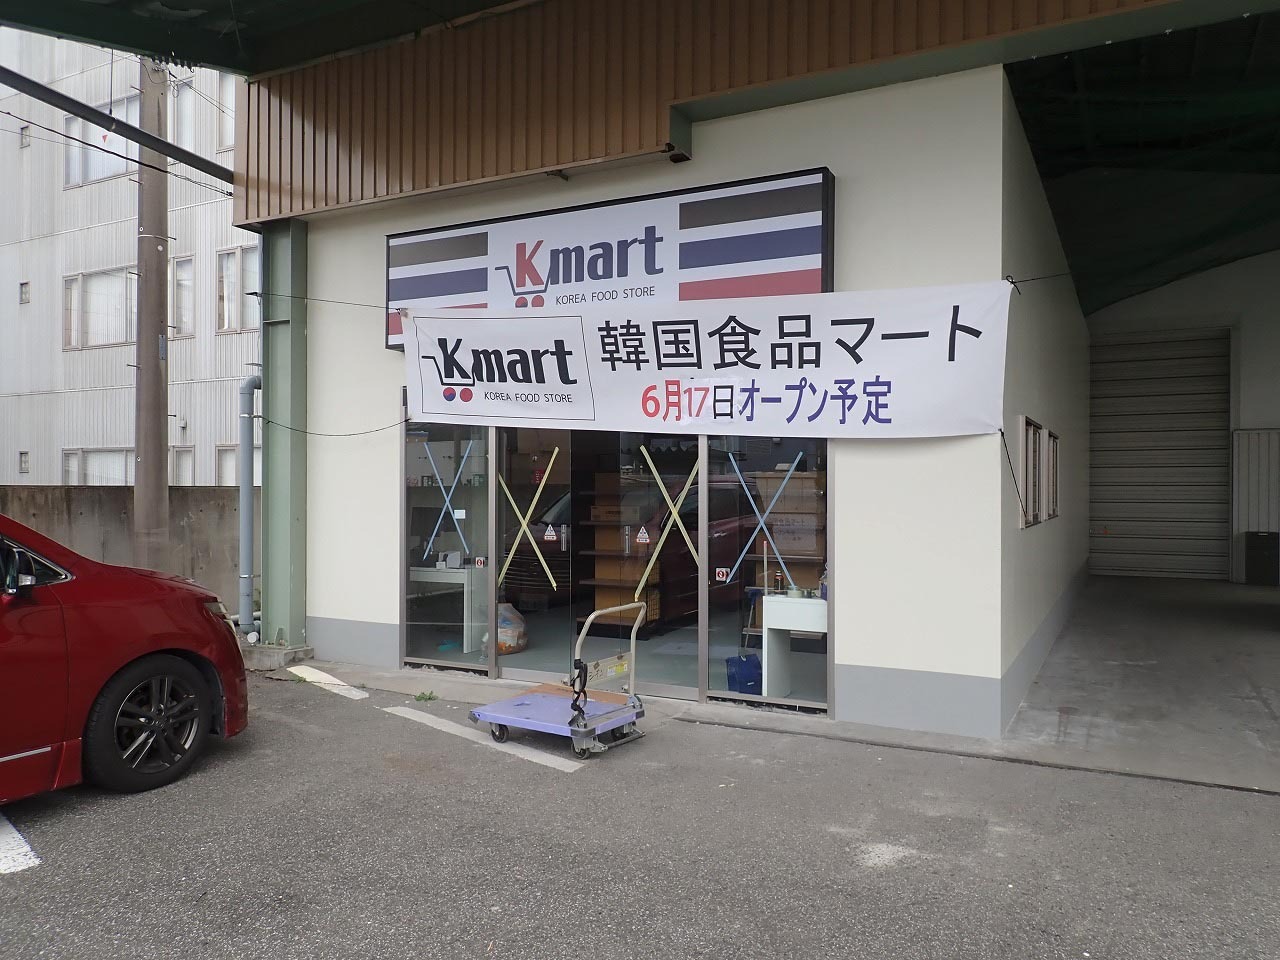 「韓美亭」の的場店と同じ埼玉県道15号線沿いで、オープン予定日は2022年6月17日です